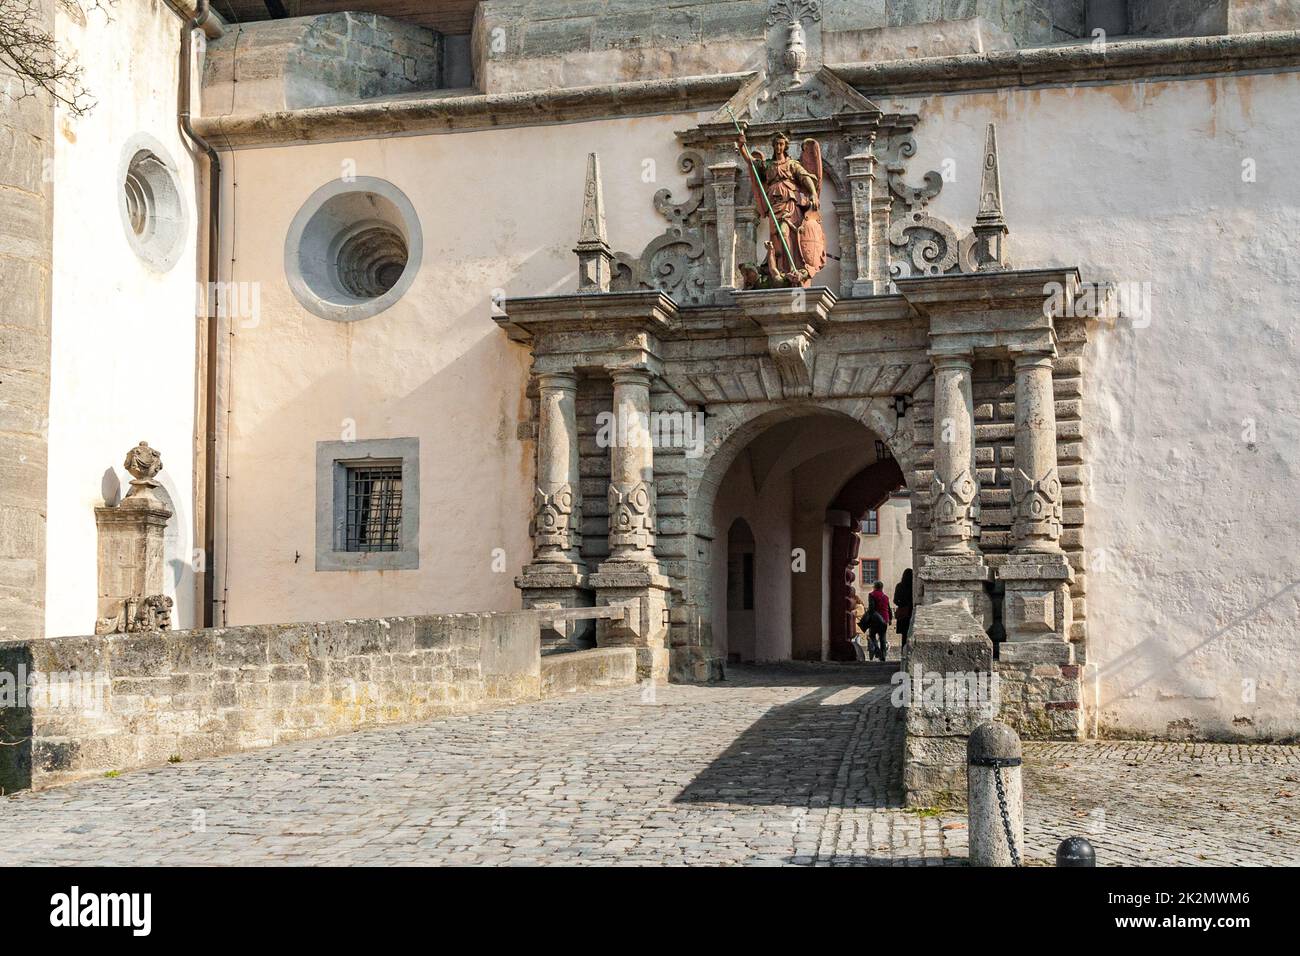 Große Nahaufnahme des 1606 im Renaissancestil erbauten Befestigungstors Echtertor der Festung Marienberg in Würzburg. Über dem... Stockfoto